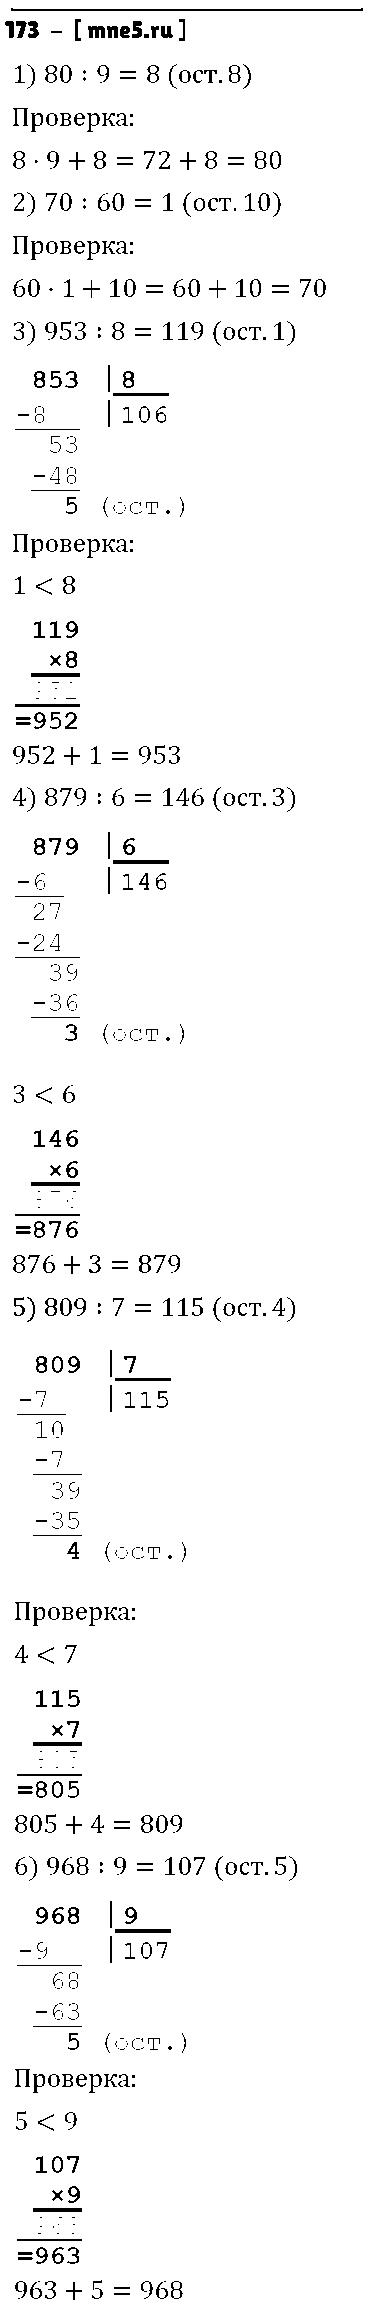 ГДЗ Математика 4 класс - 173